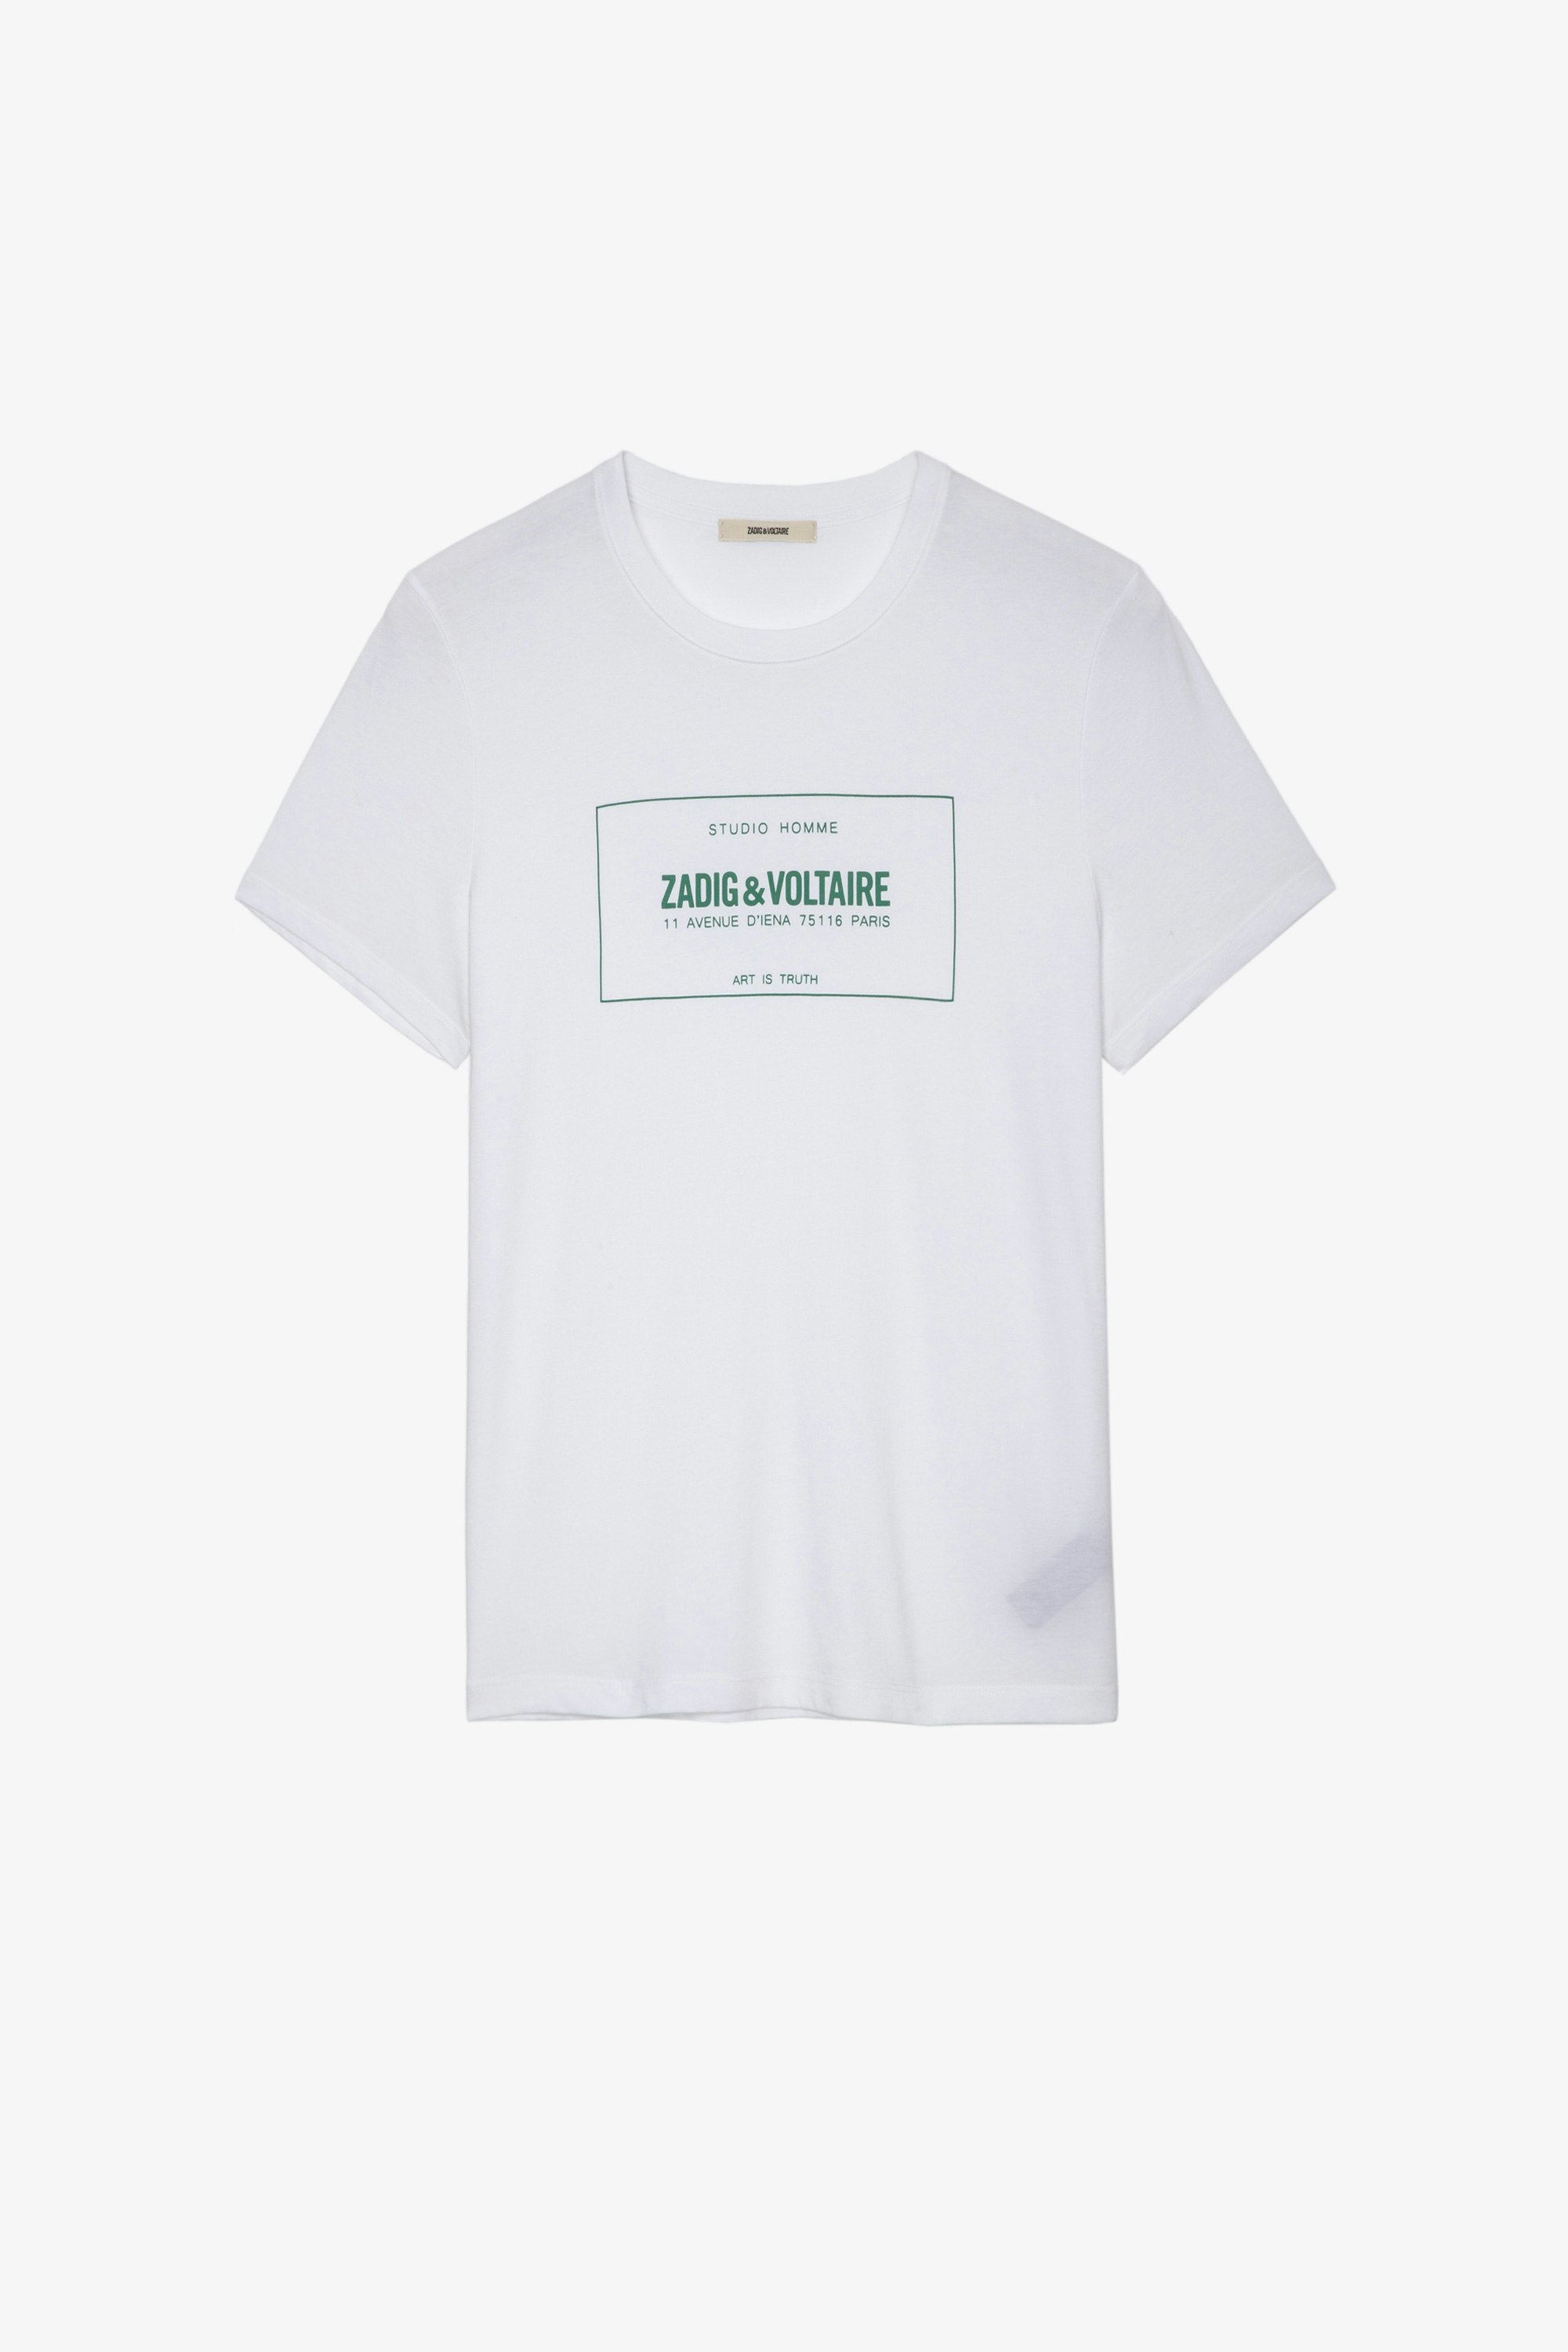 T-shirt Ted Blason T-shirt in cotone bianco decorata con lo stemma della Maison - Uomo